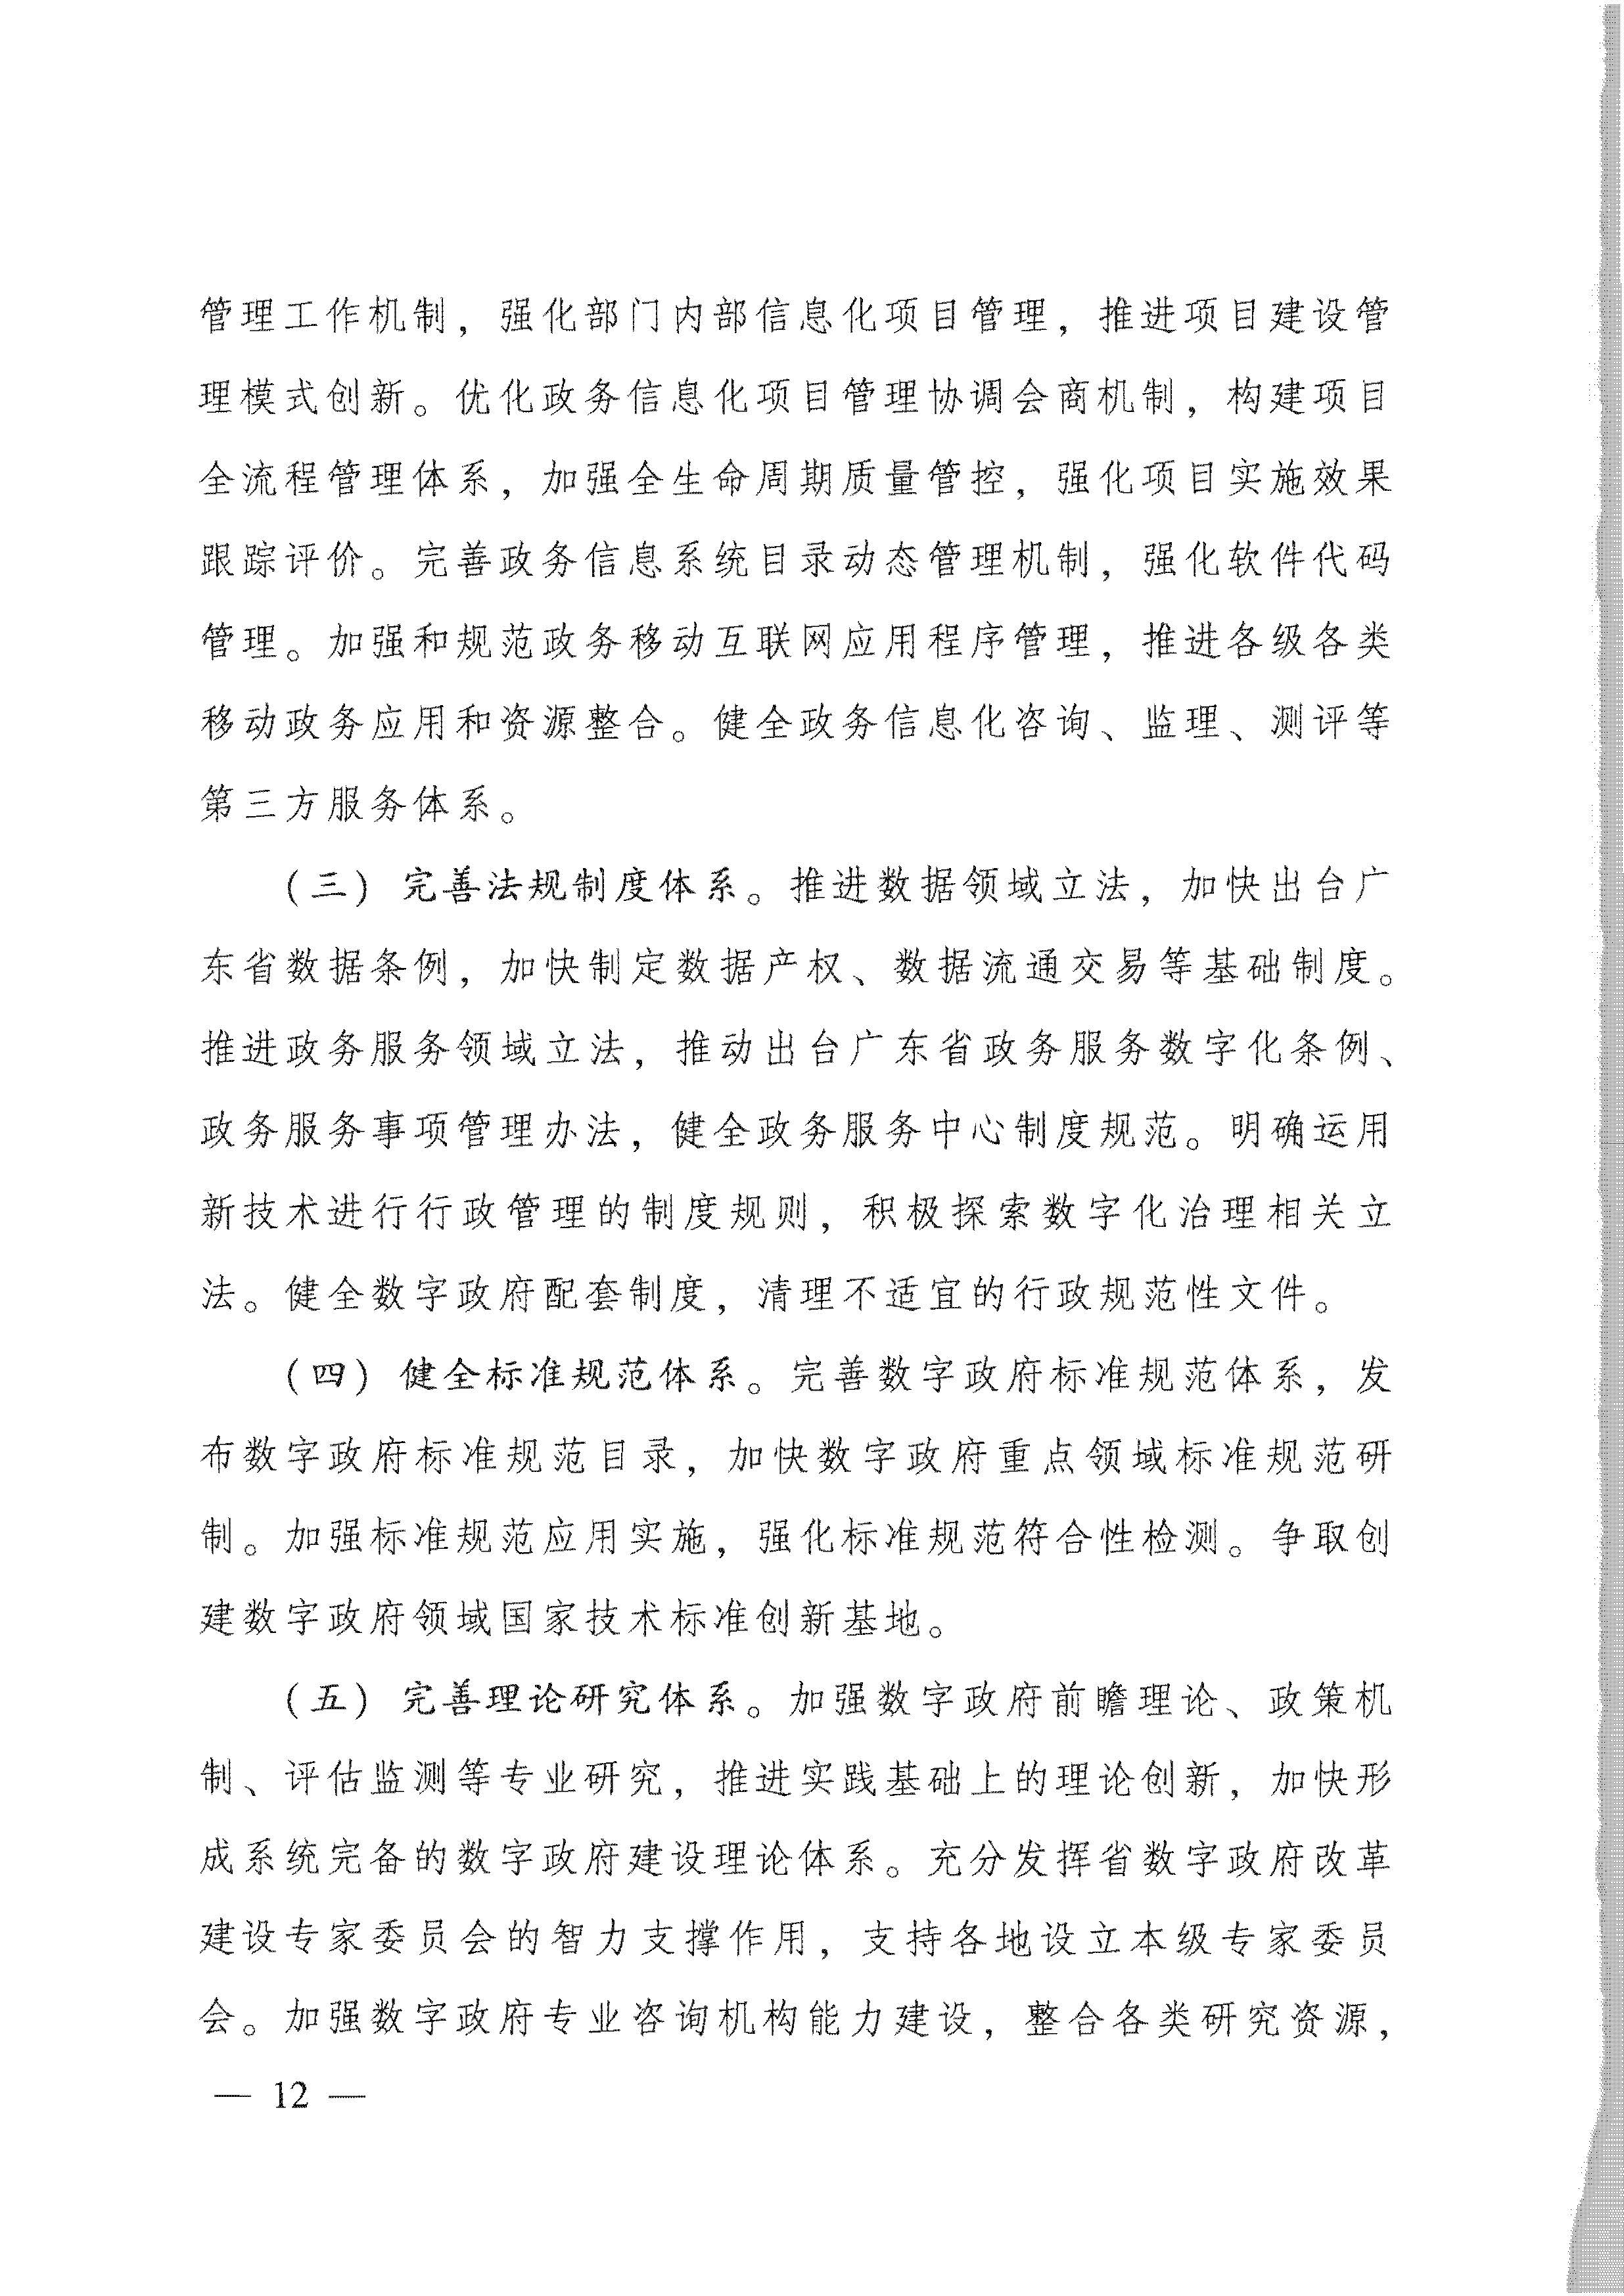 广东省人民政府关于进一步深化数字政府改革建设的实施意见_页面_12.jpg